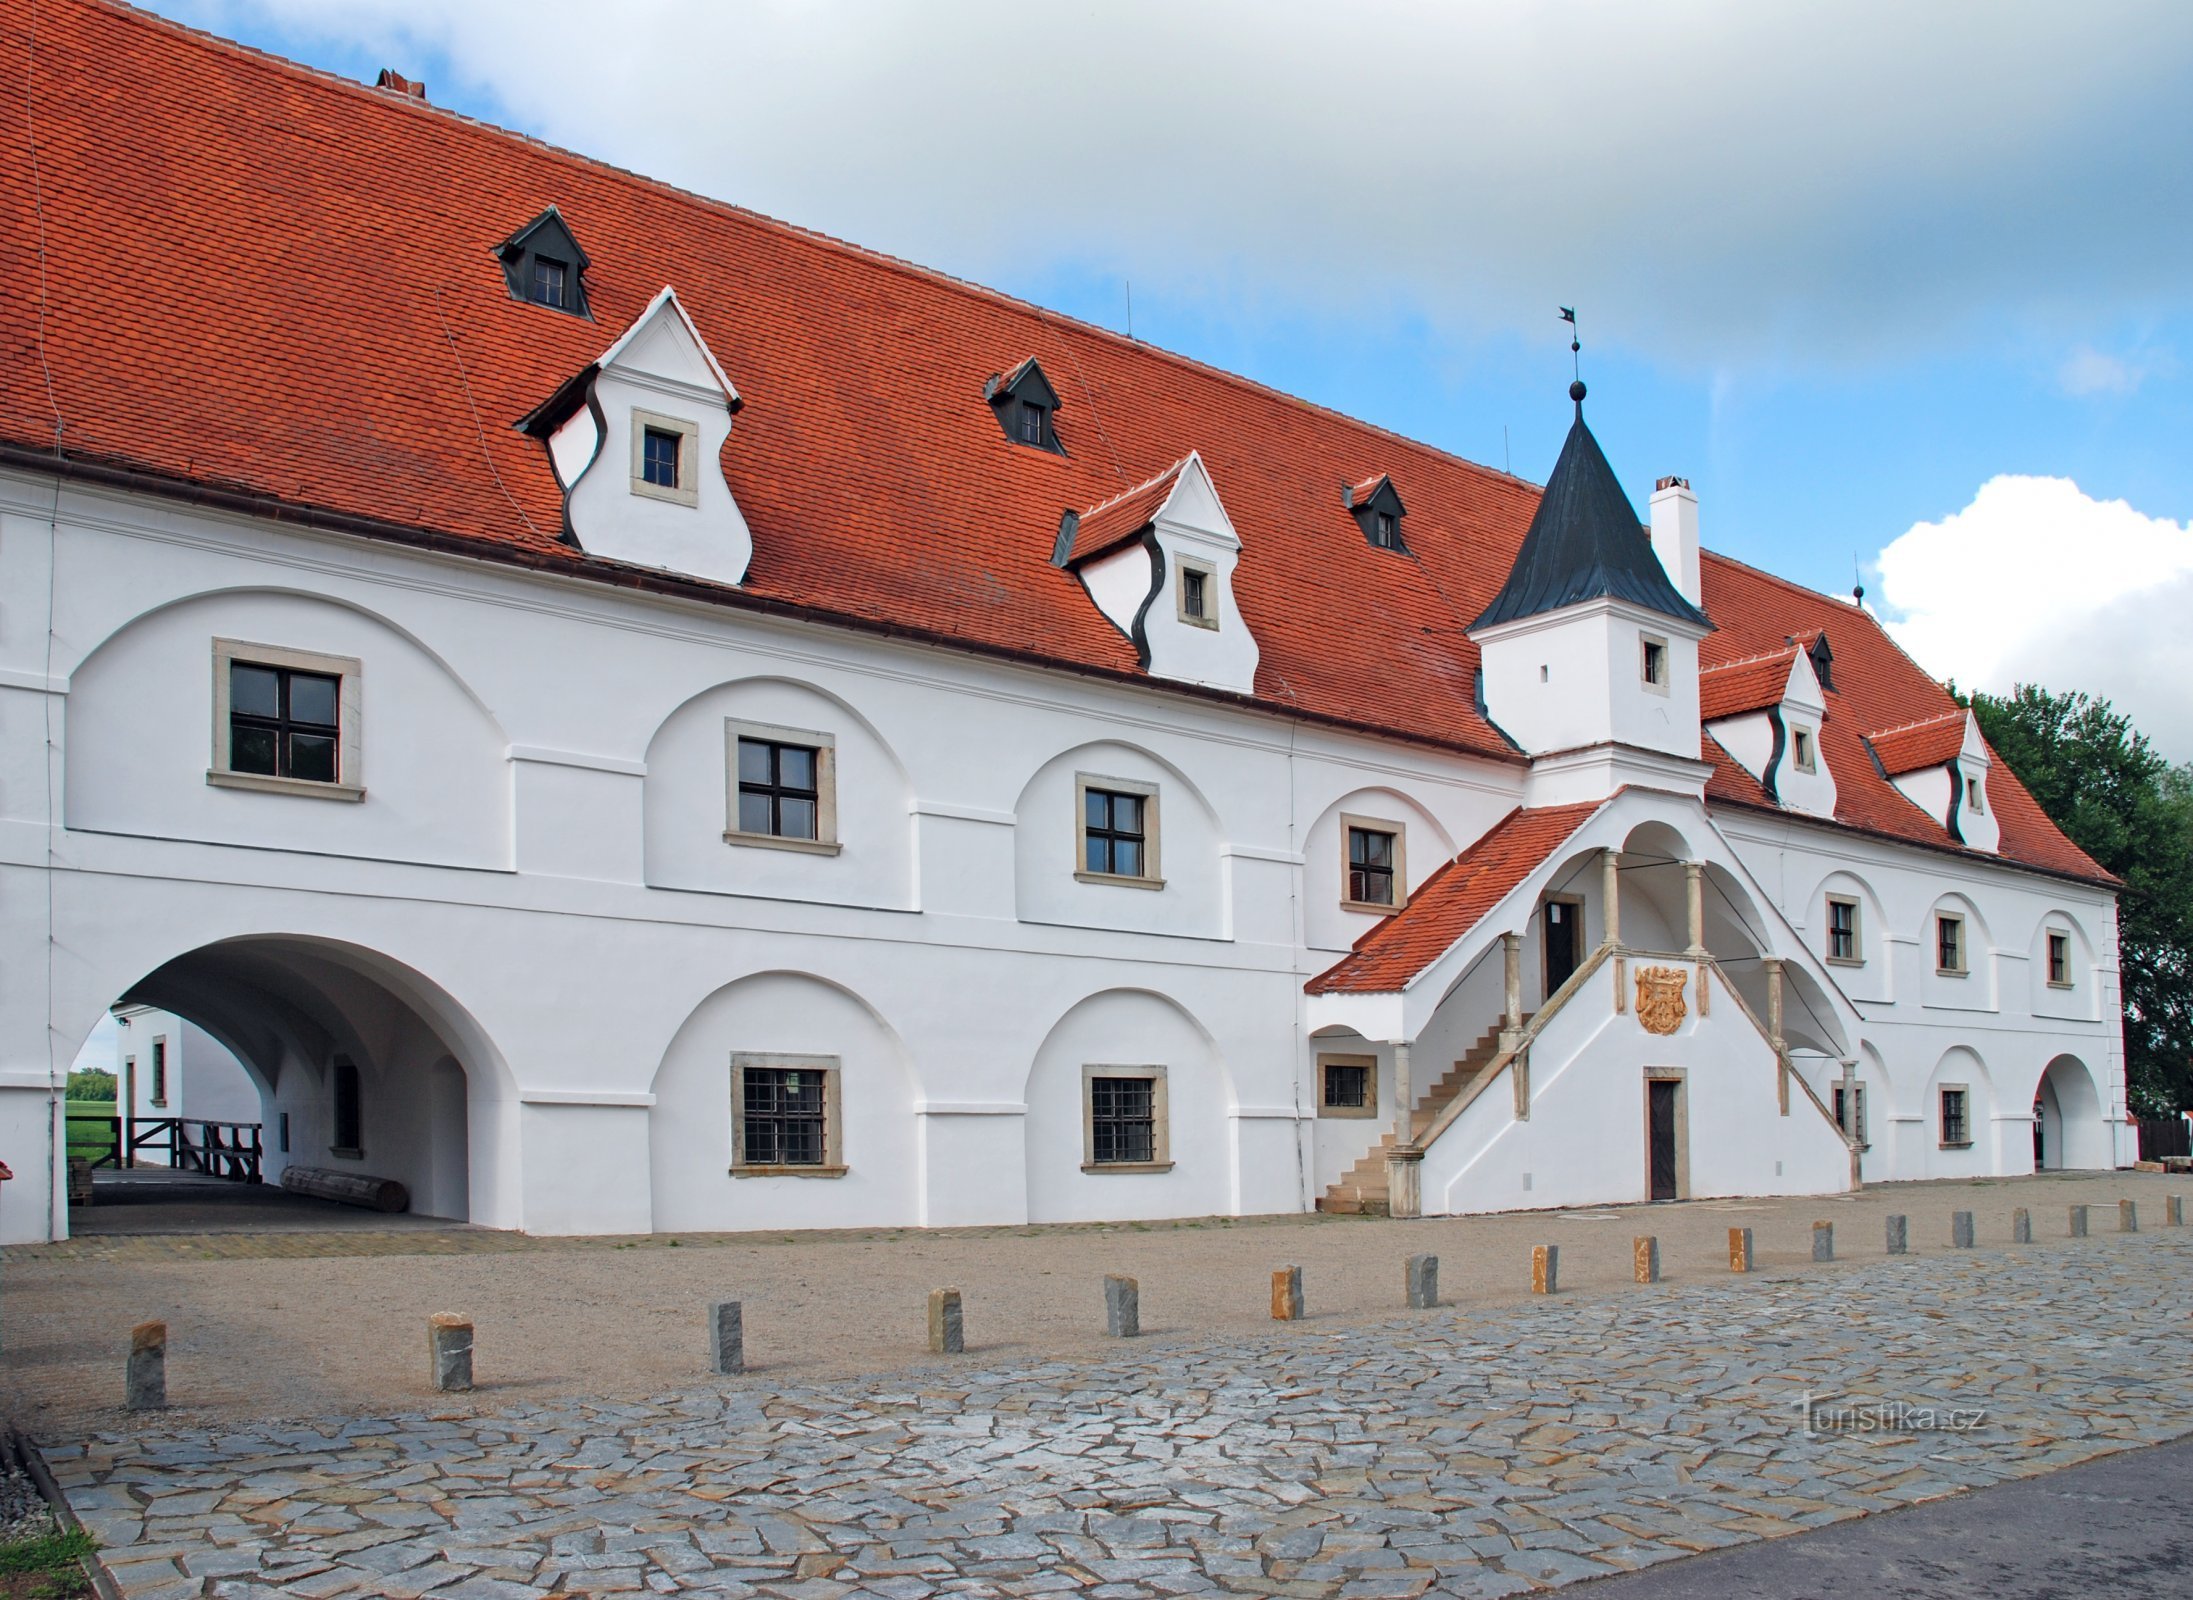 Технический музей в Брно открывает туристический сезон на своих площадках за пределами Брно